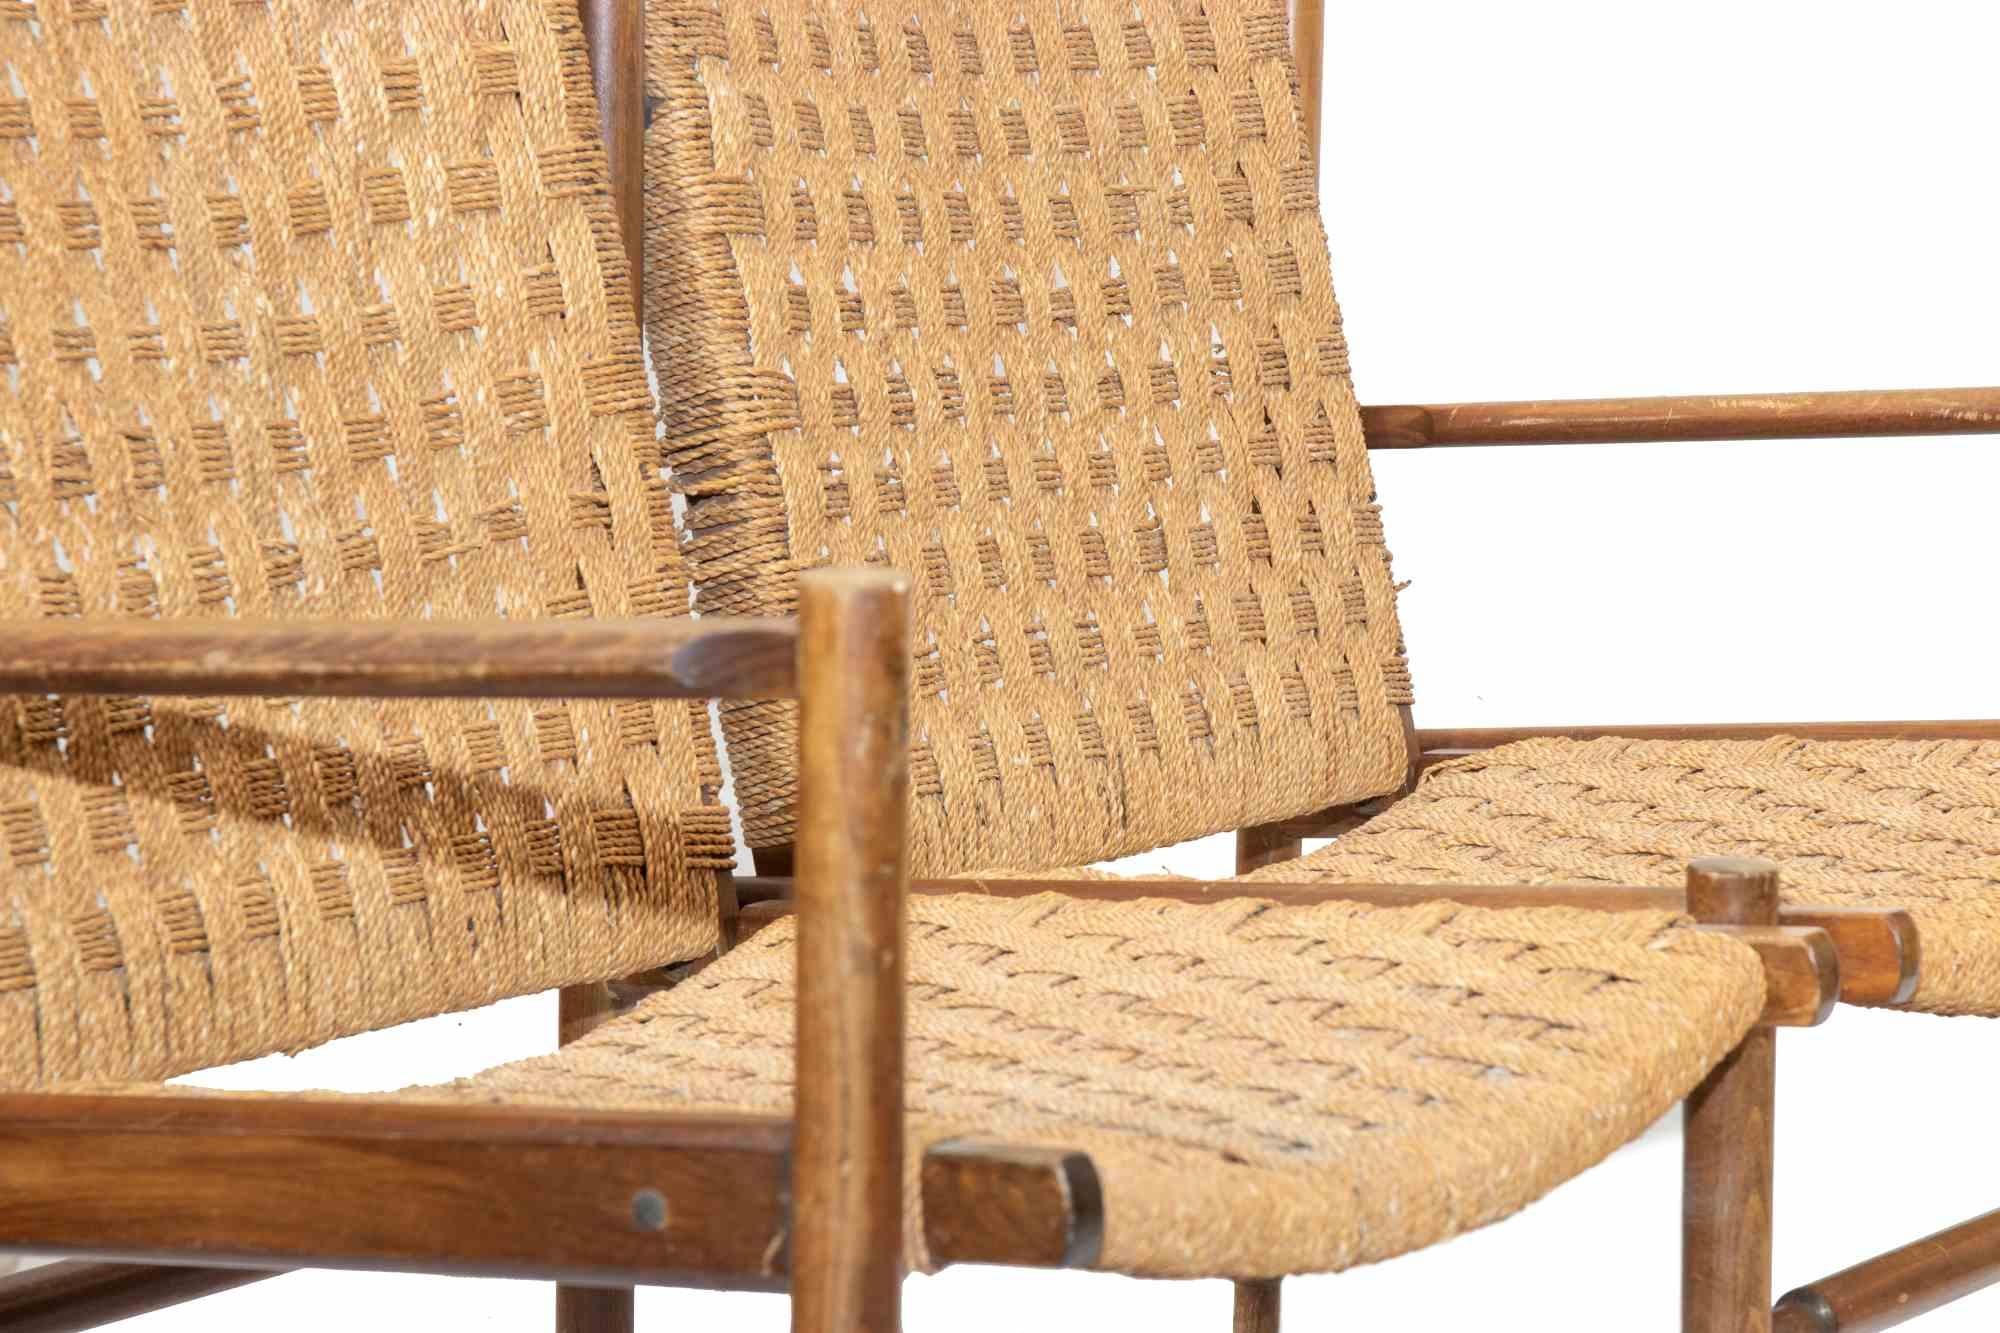 Das zweisitzige Sofa ist ein Designermöbel, das von einem Künstler aus der Mitte des 20. Jahrhunderts entworfen wurde.

Ein Vintage-Sofa aus Teakholz und Stroh.

Abmessungen:

Länge 110 cm 
Höhe 80 cm 
Sitzhöhe 37 cm 
Sitztiefe 50 cm

